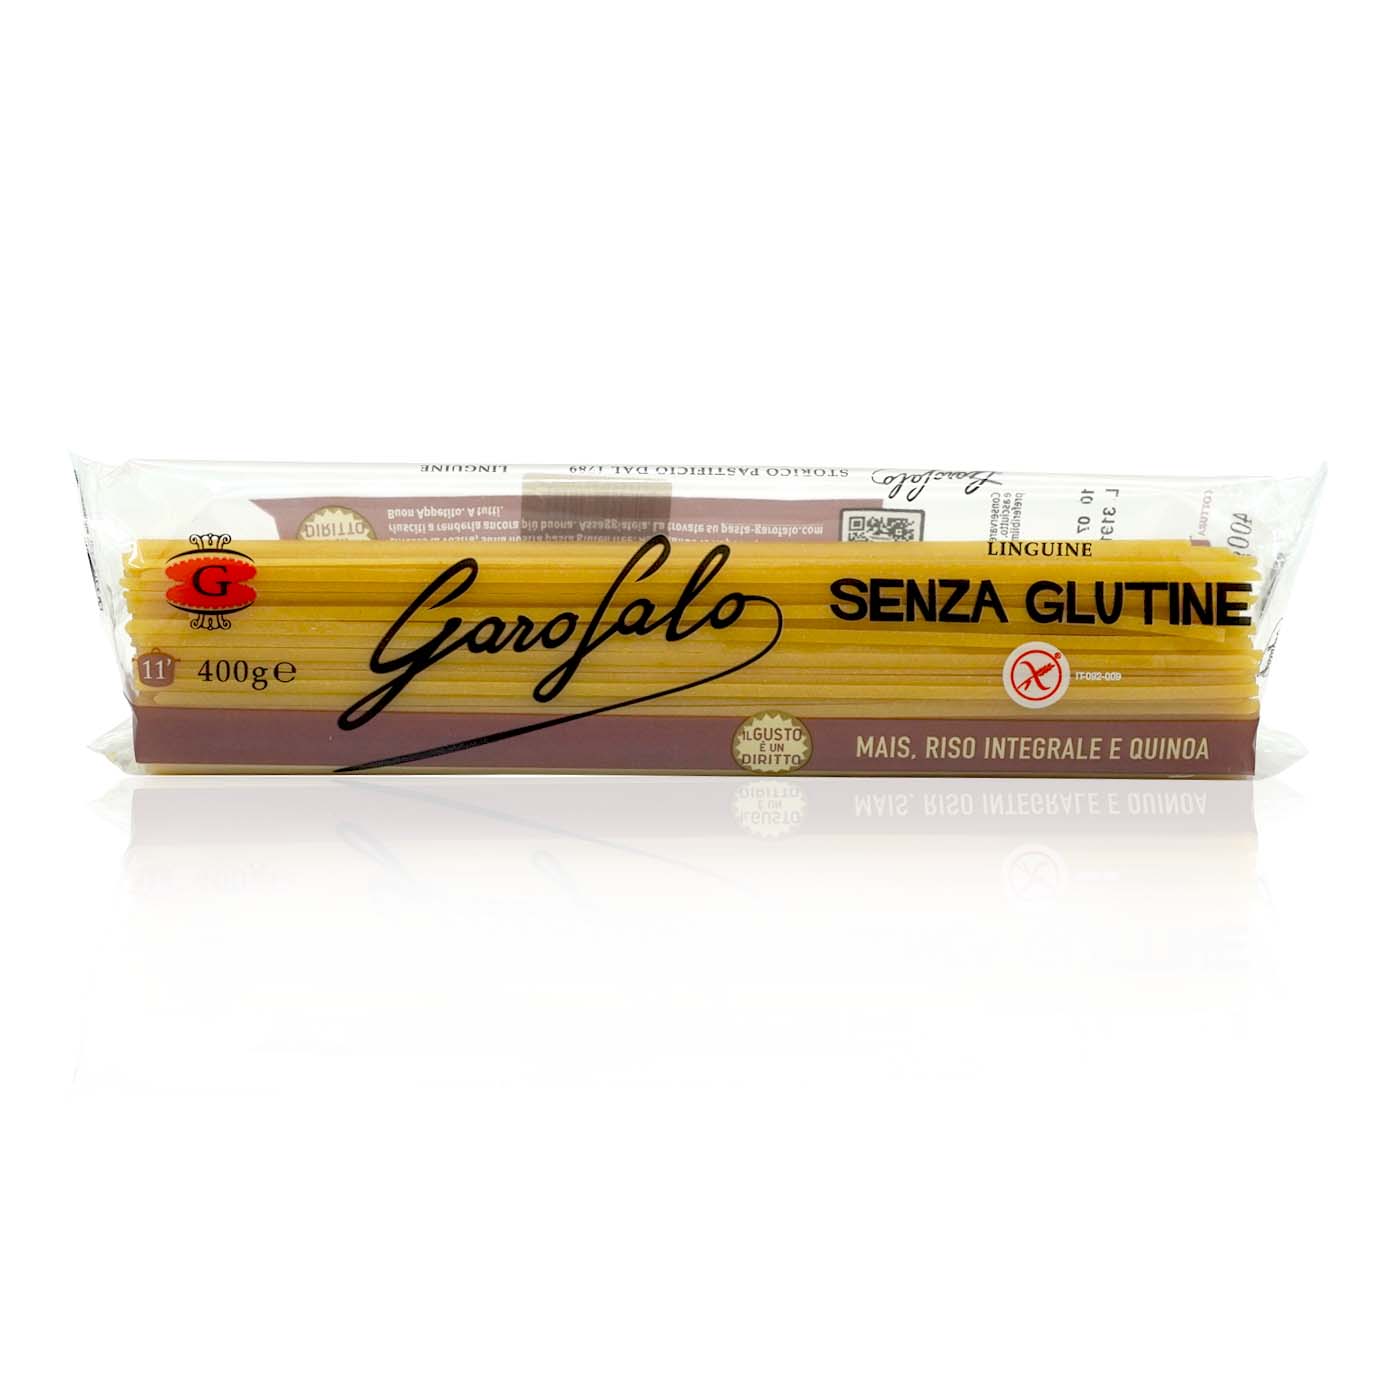 GAROFALO Linguine senza glutine - Linguine glutenfrei - 0,4kg - italienisch - einkaufen.de